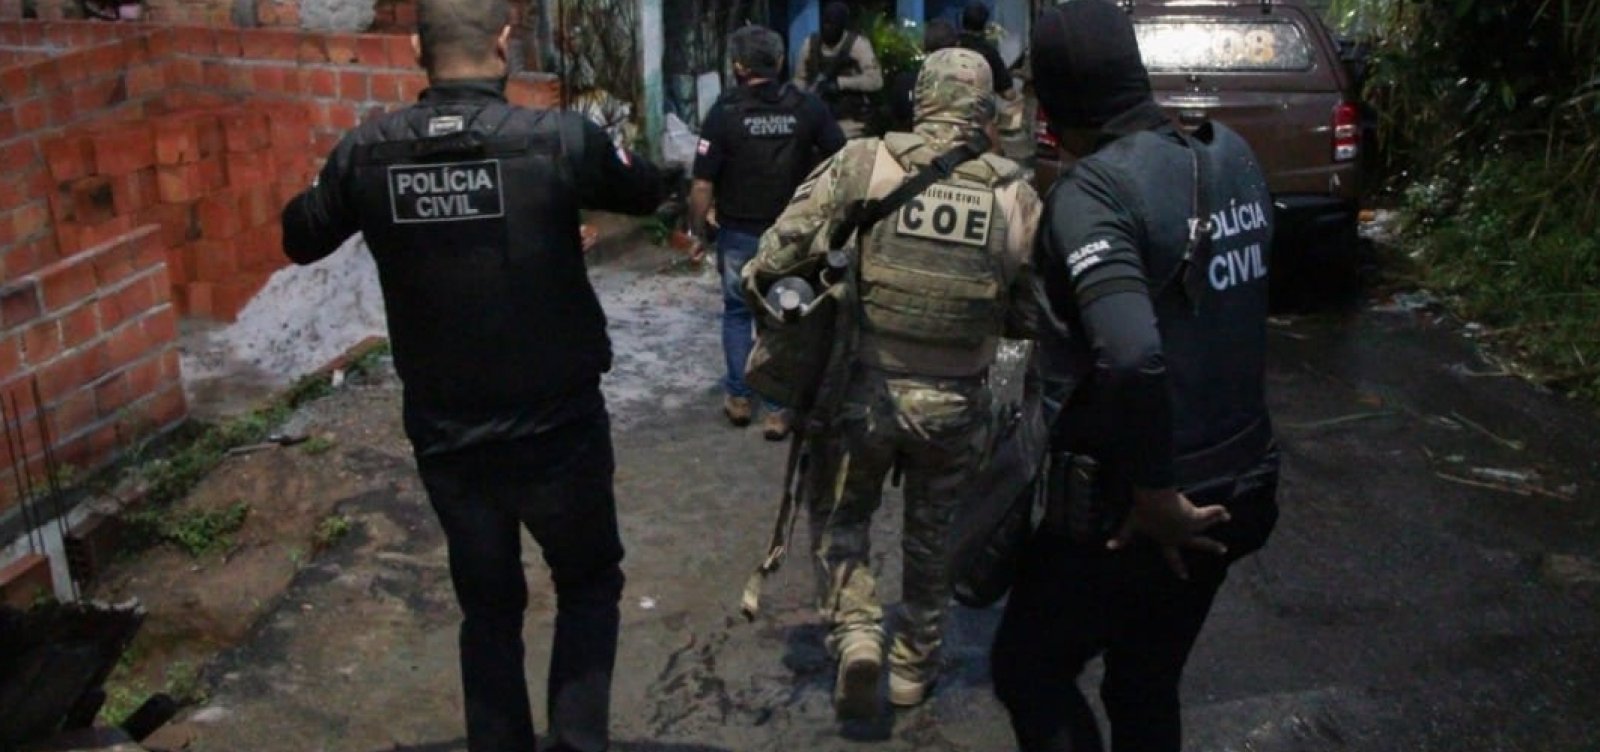 Bahia registra 104 mortes por intervenção policial em dois meses, aponta levantamento 